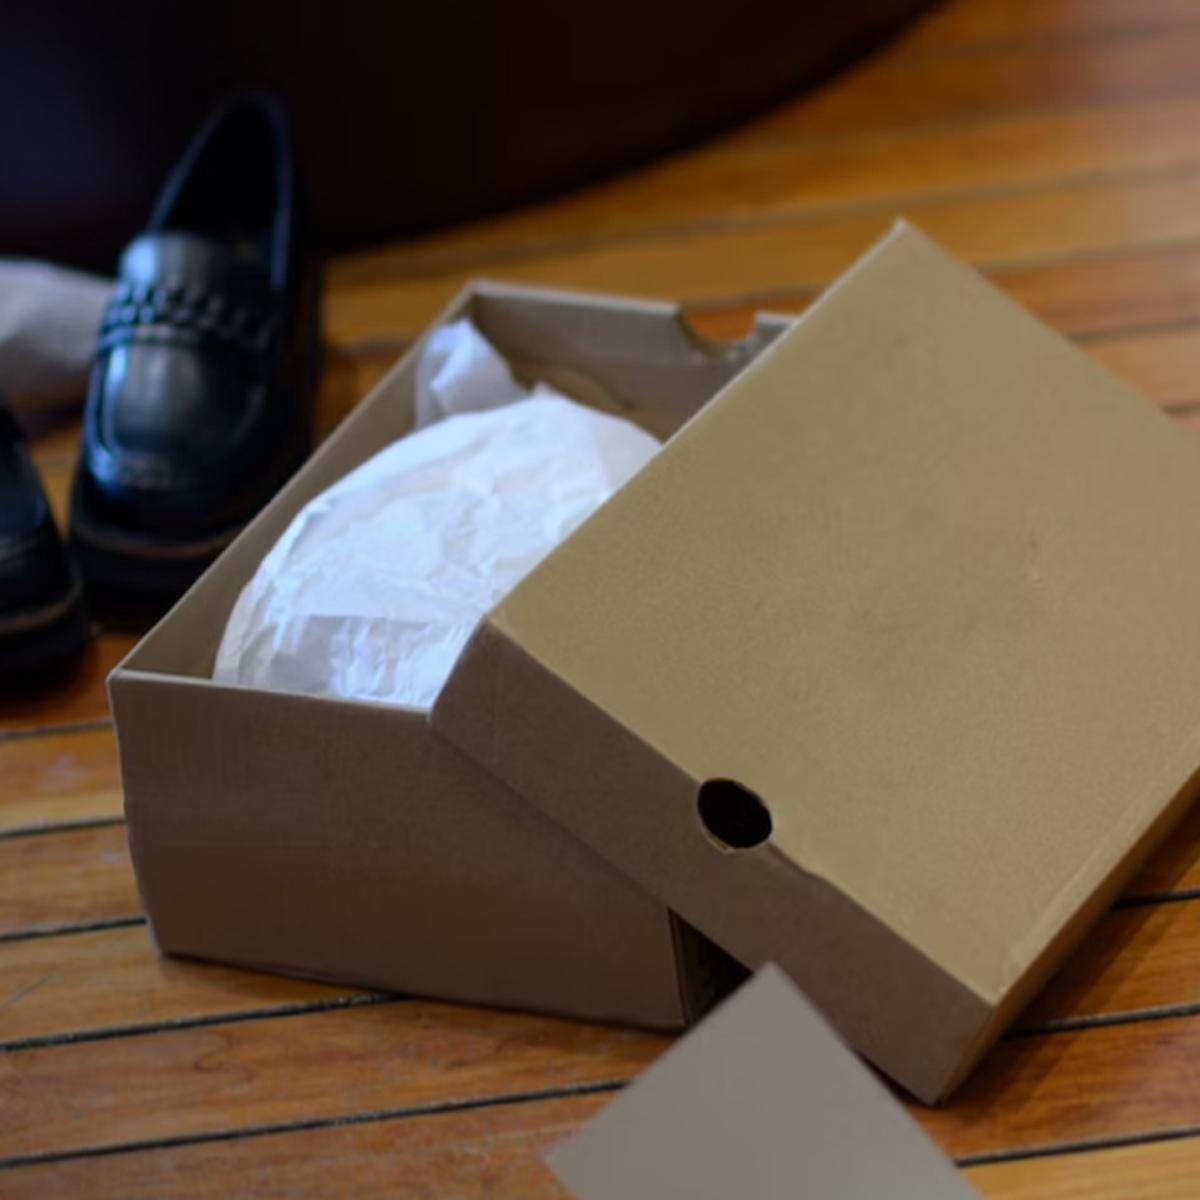 Trucos caseros: cómo reutilizar las cajas de zapatos: ideas creativas para  el hogar, remedios, RESPUESTAS